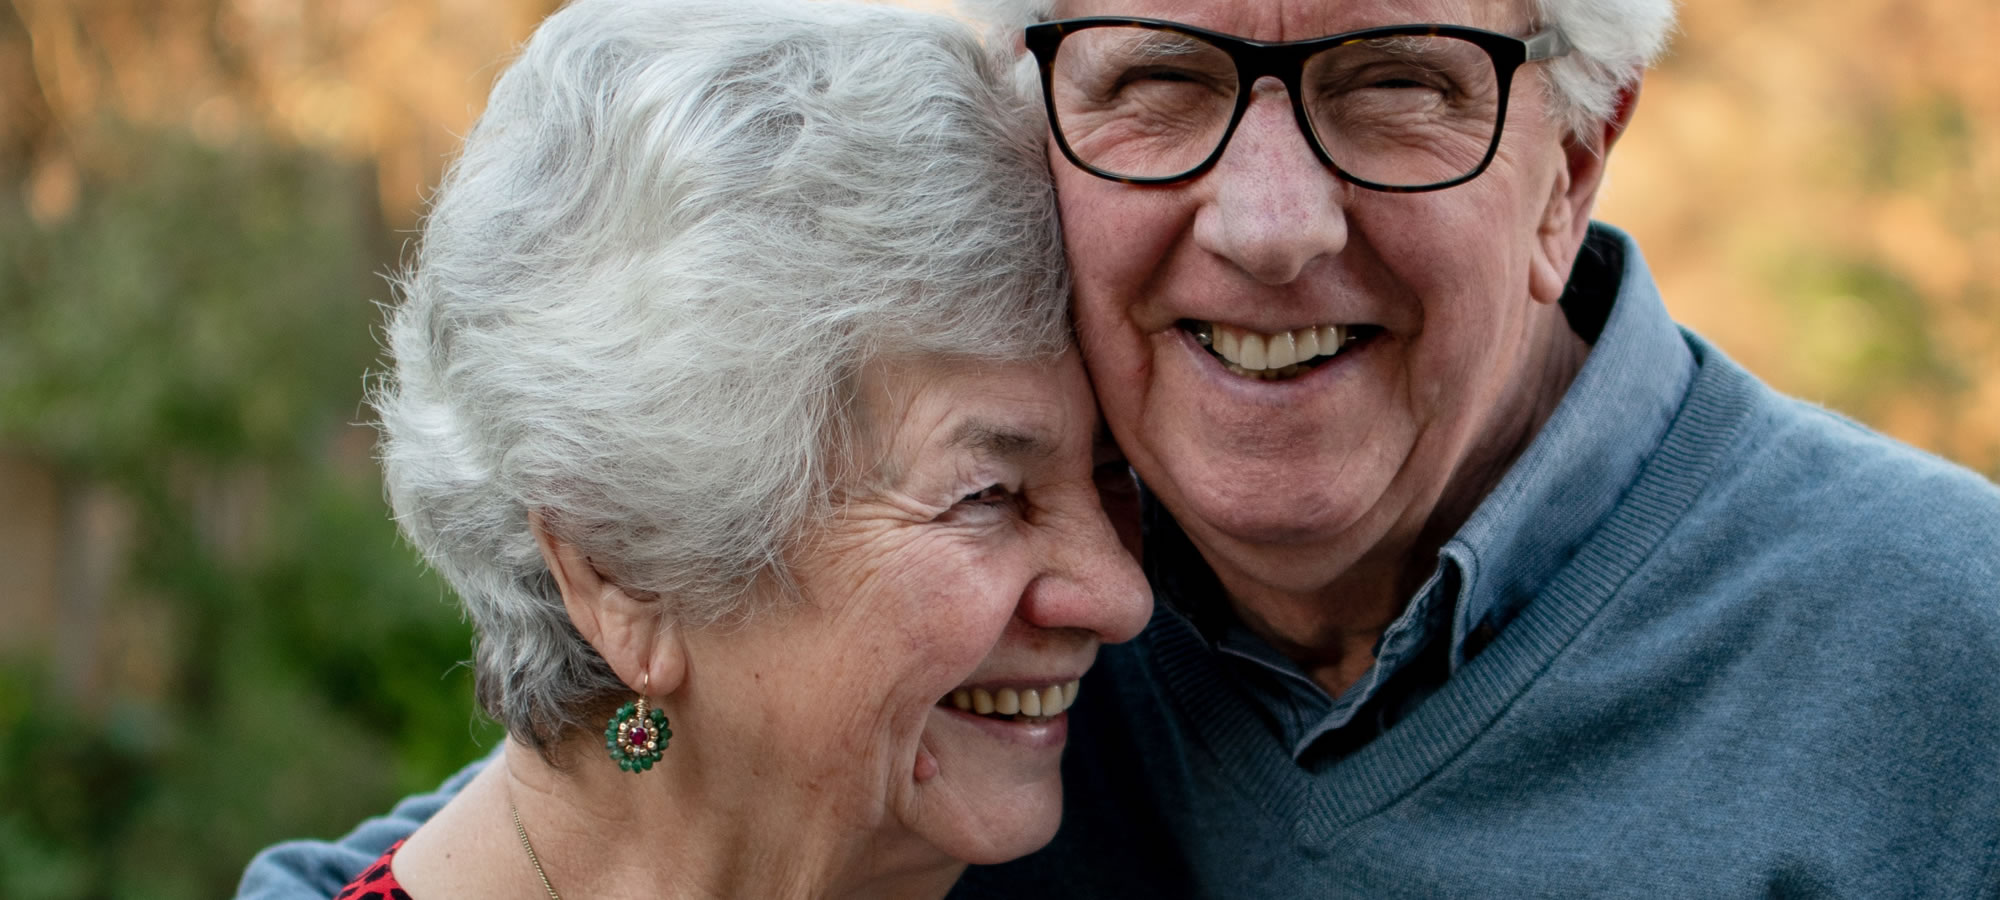 older couple hugging smiling